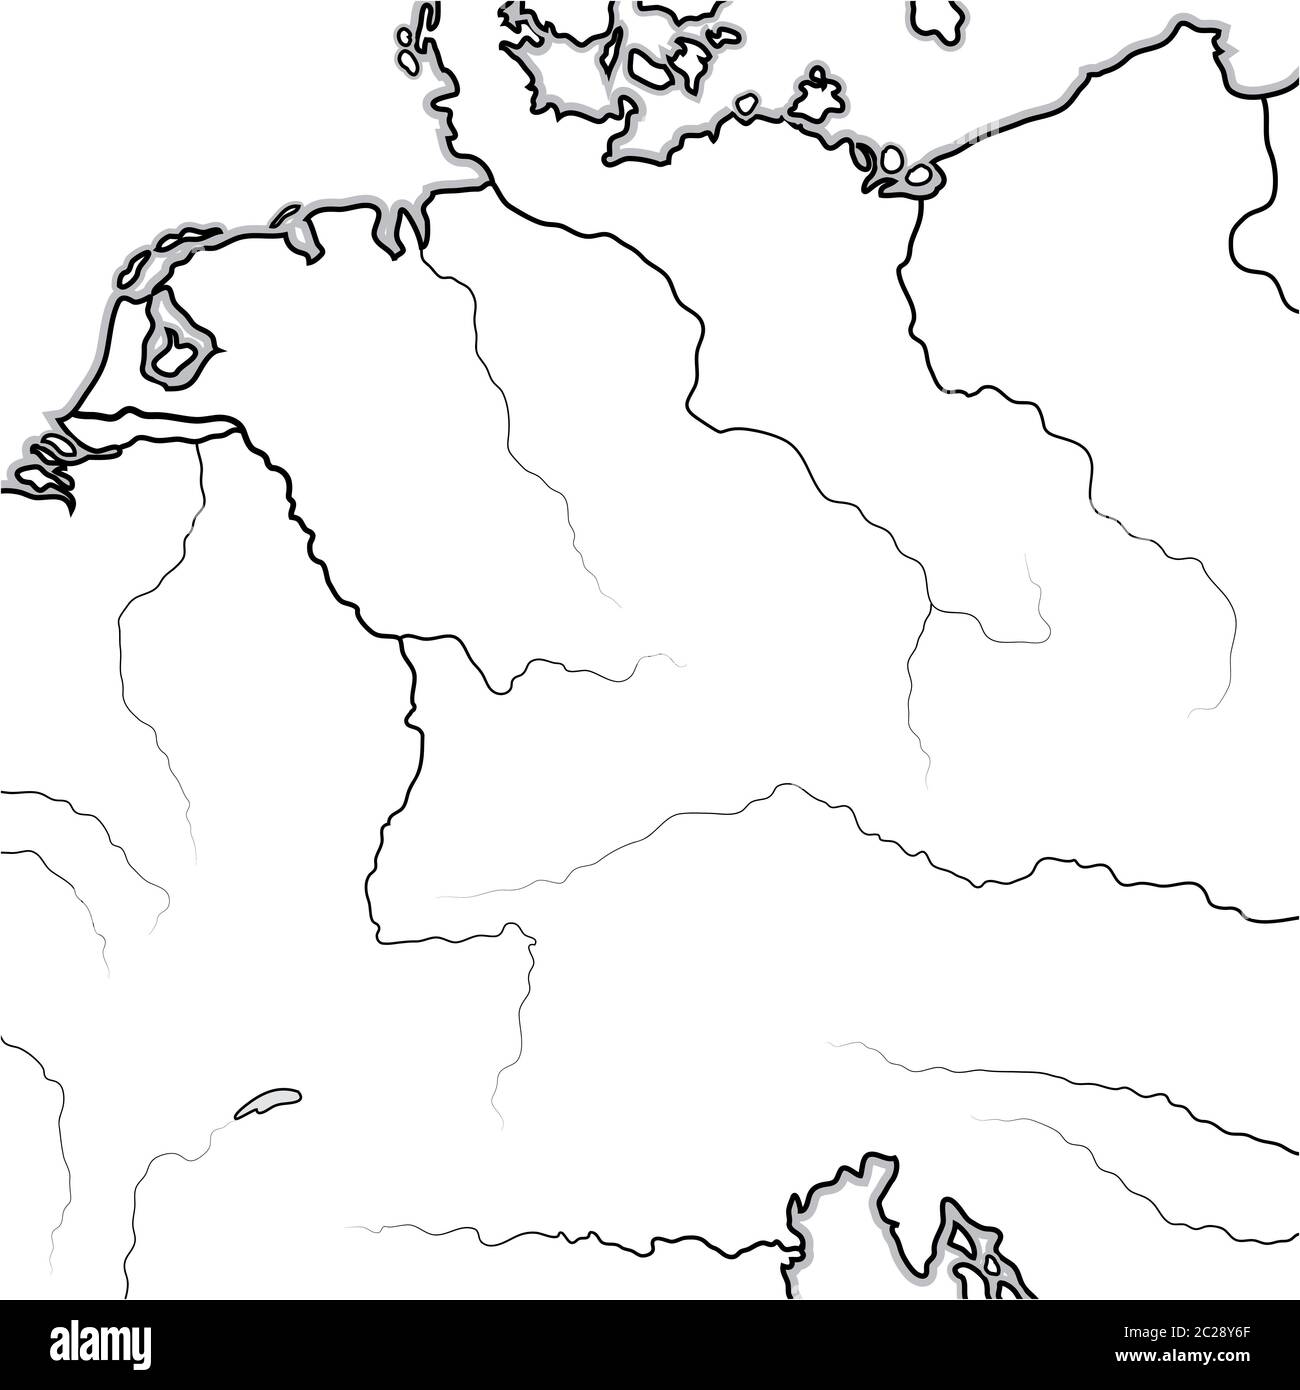 Karte der DEUTSCHEN Länder: Deutschland, Sachsen, Bayern, Teutonia, Preußen, Österreich. Geografische Karte. Stockfoto